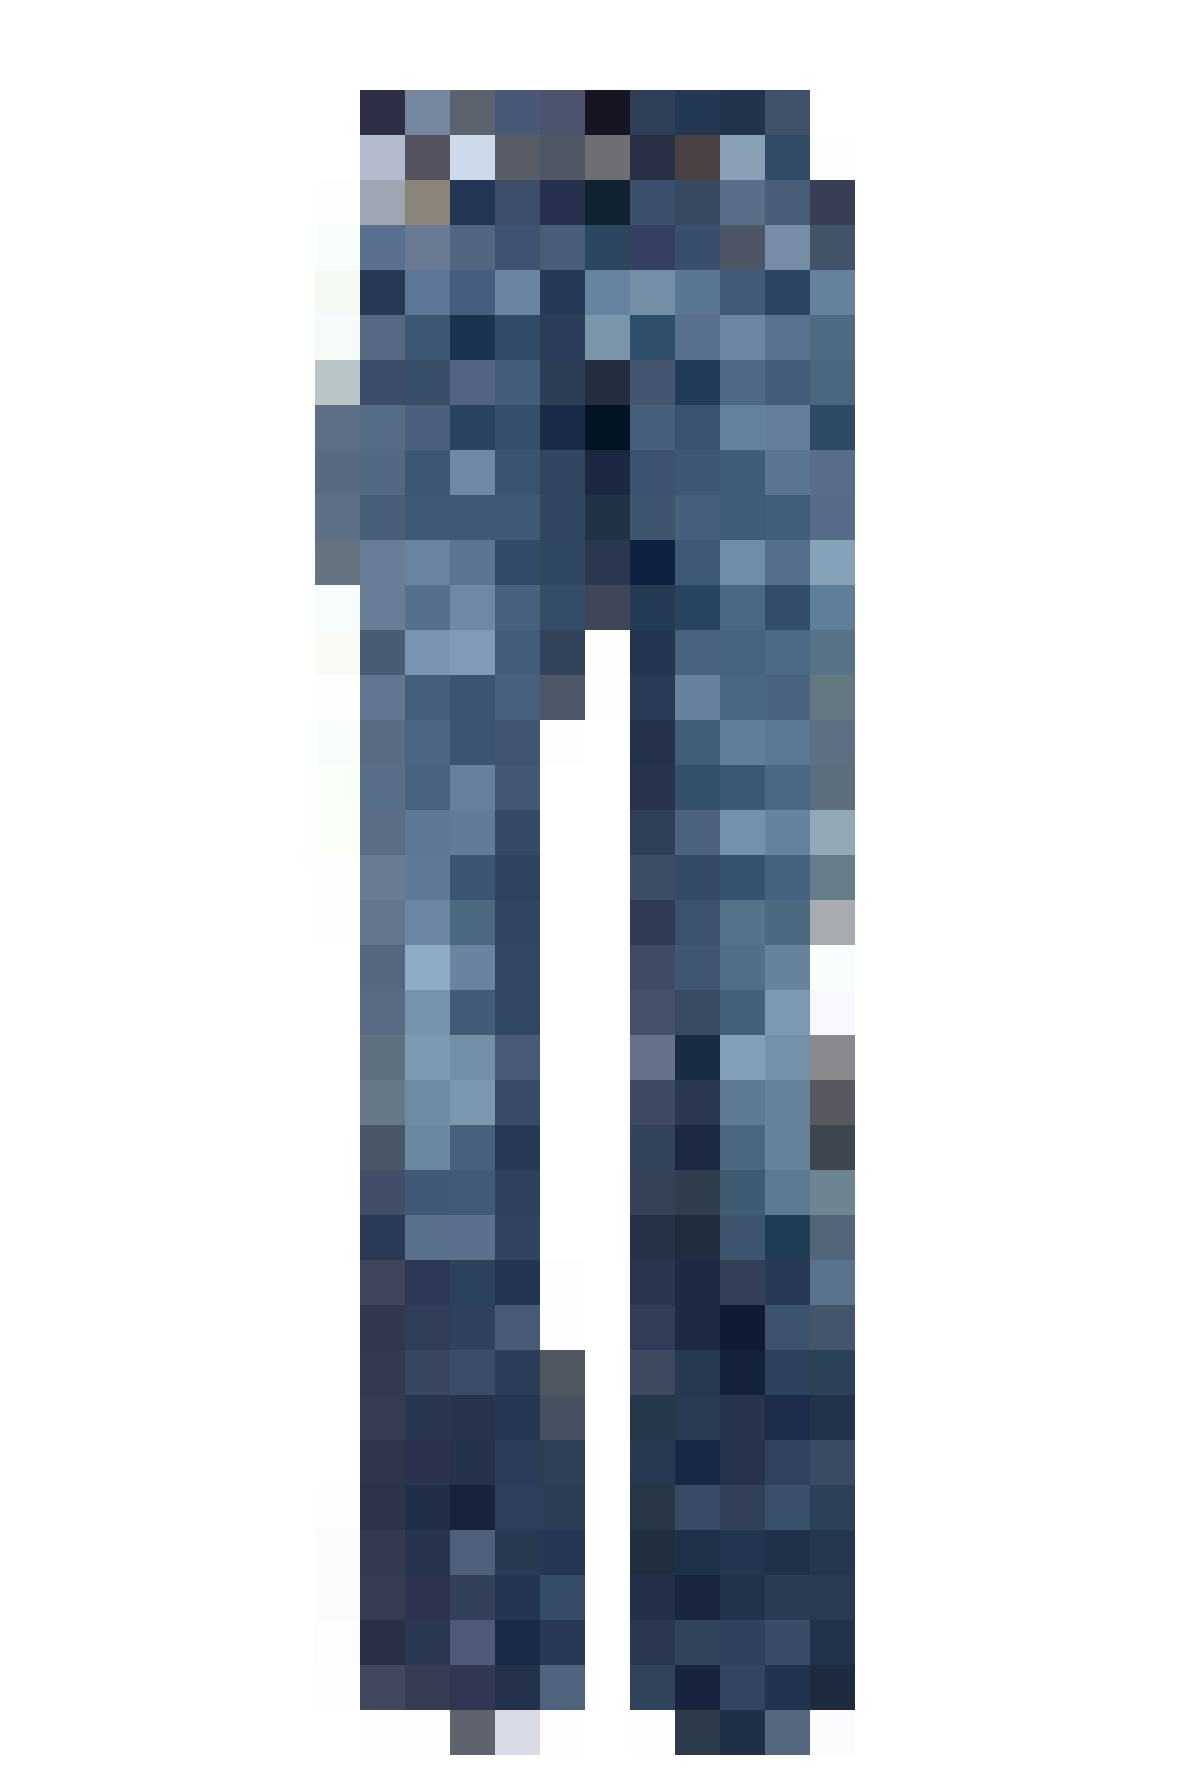 Egal ob Mann oder Frau: Wer den coolen Look liebt, könnte auch Fan von dieser Unisex-Hose werden: Relaxed Denim in mid blue, Fr. 59.95 auf